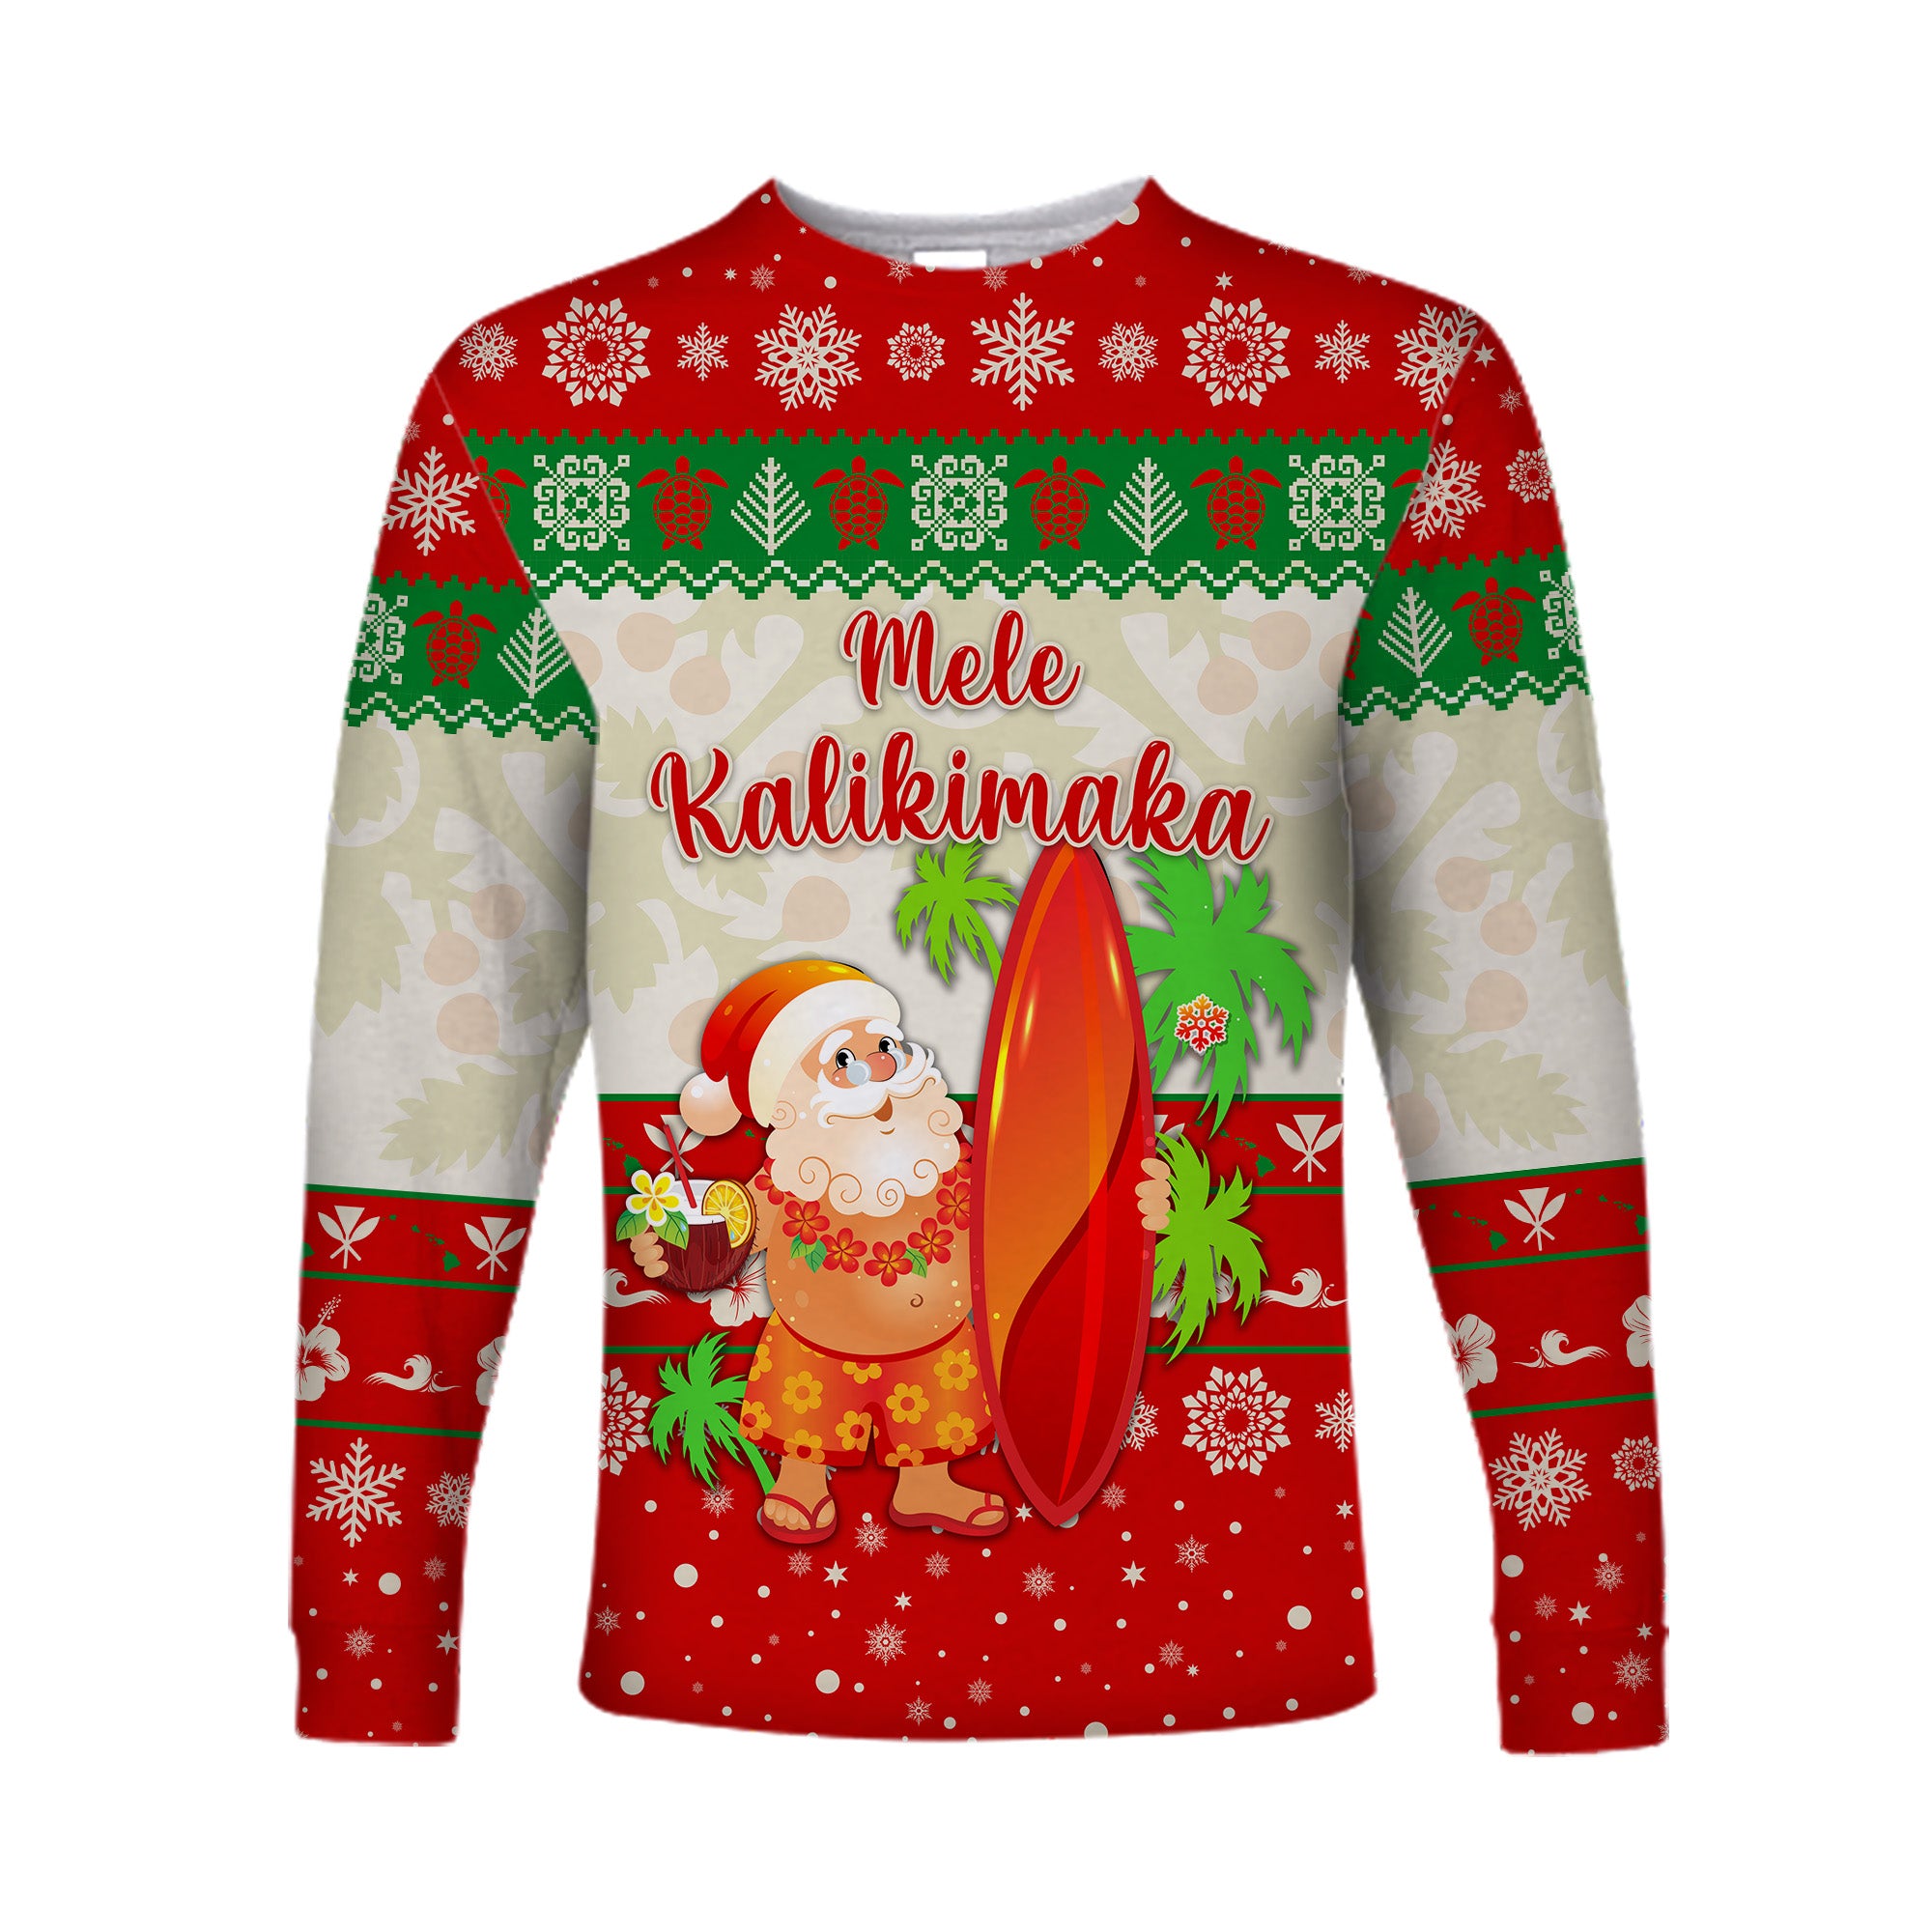 (Custom Personalised) Hawaii Christmas Long Sleeve Shirt Santa Claus Surfing Simple Style - Beige Red LT8 - Polynesian Pride